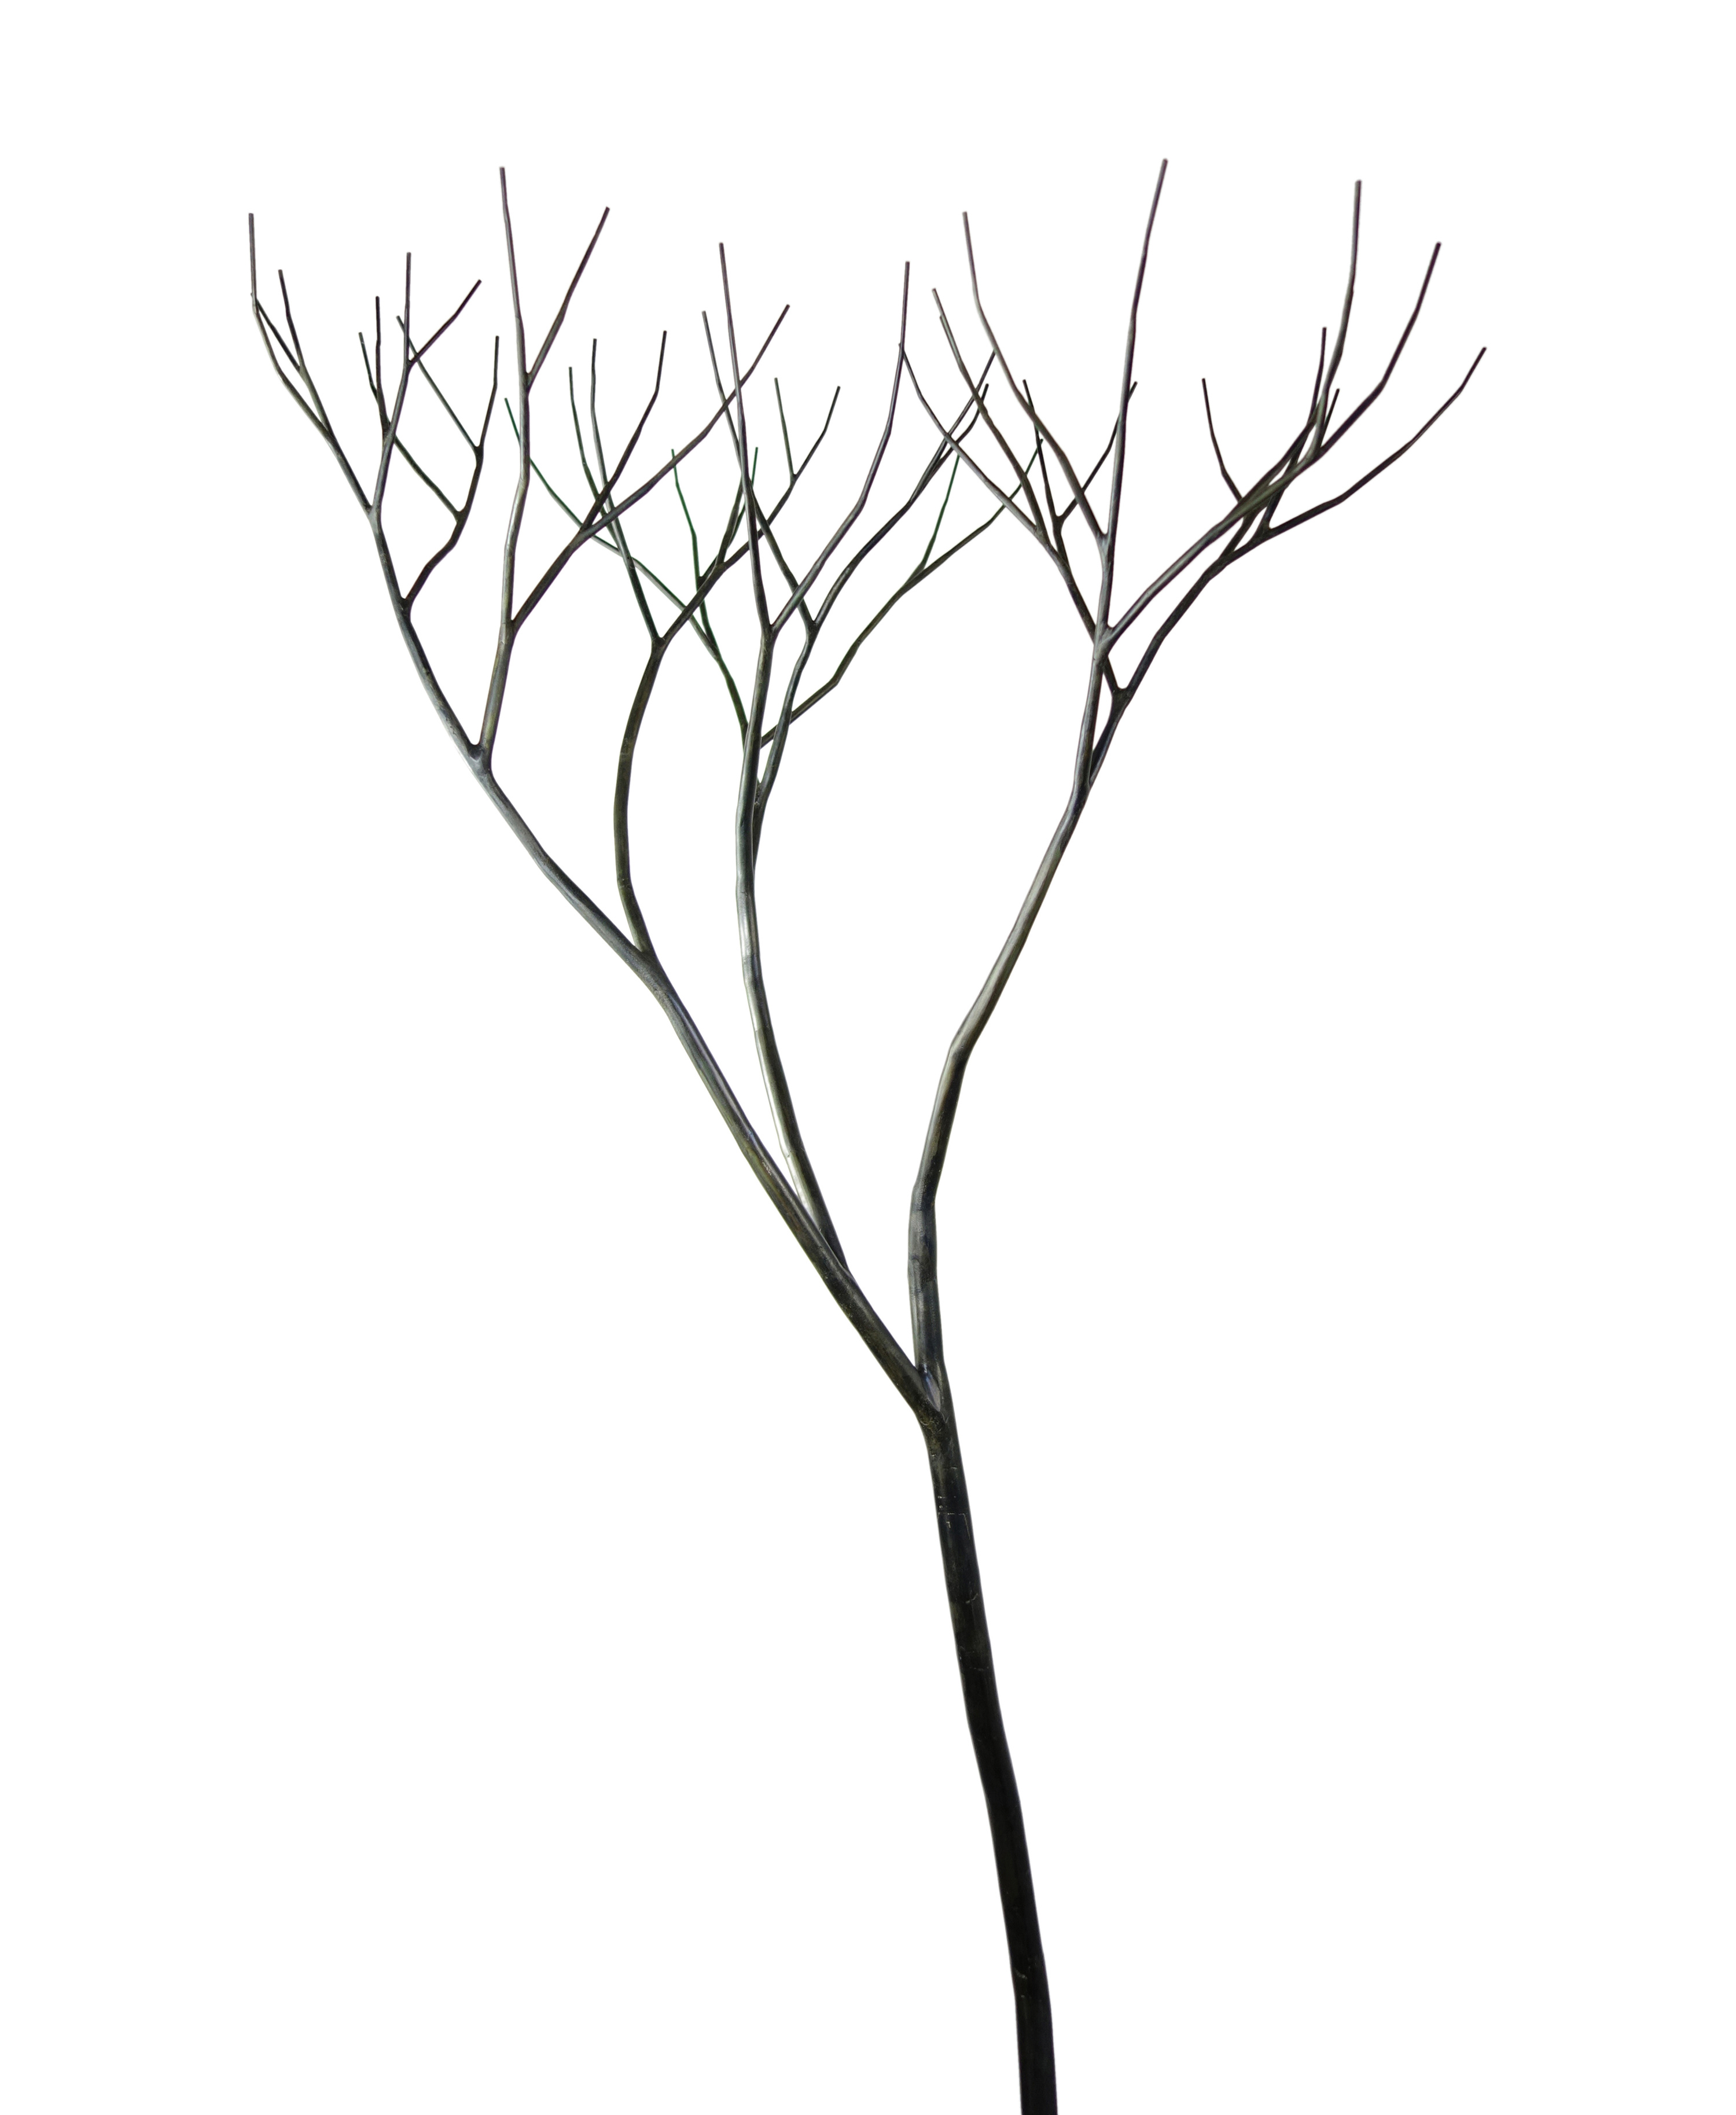 arbre metal